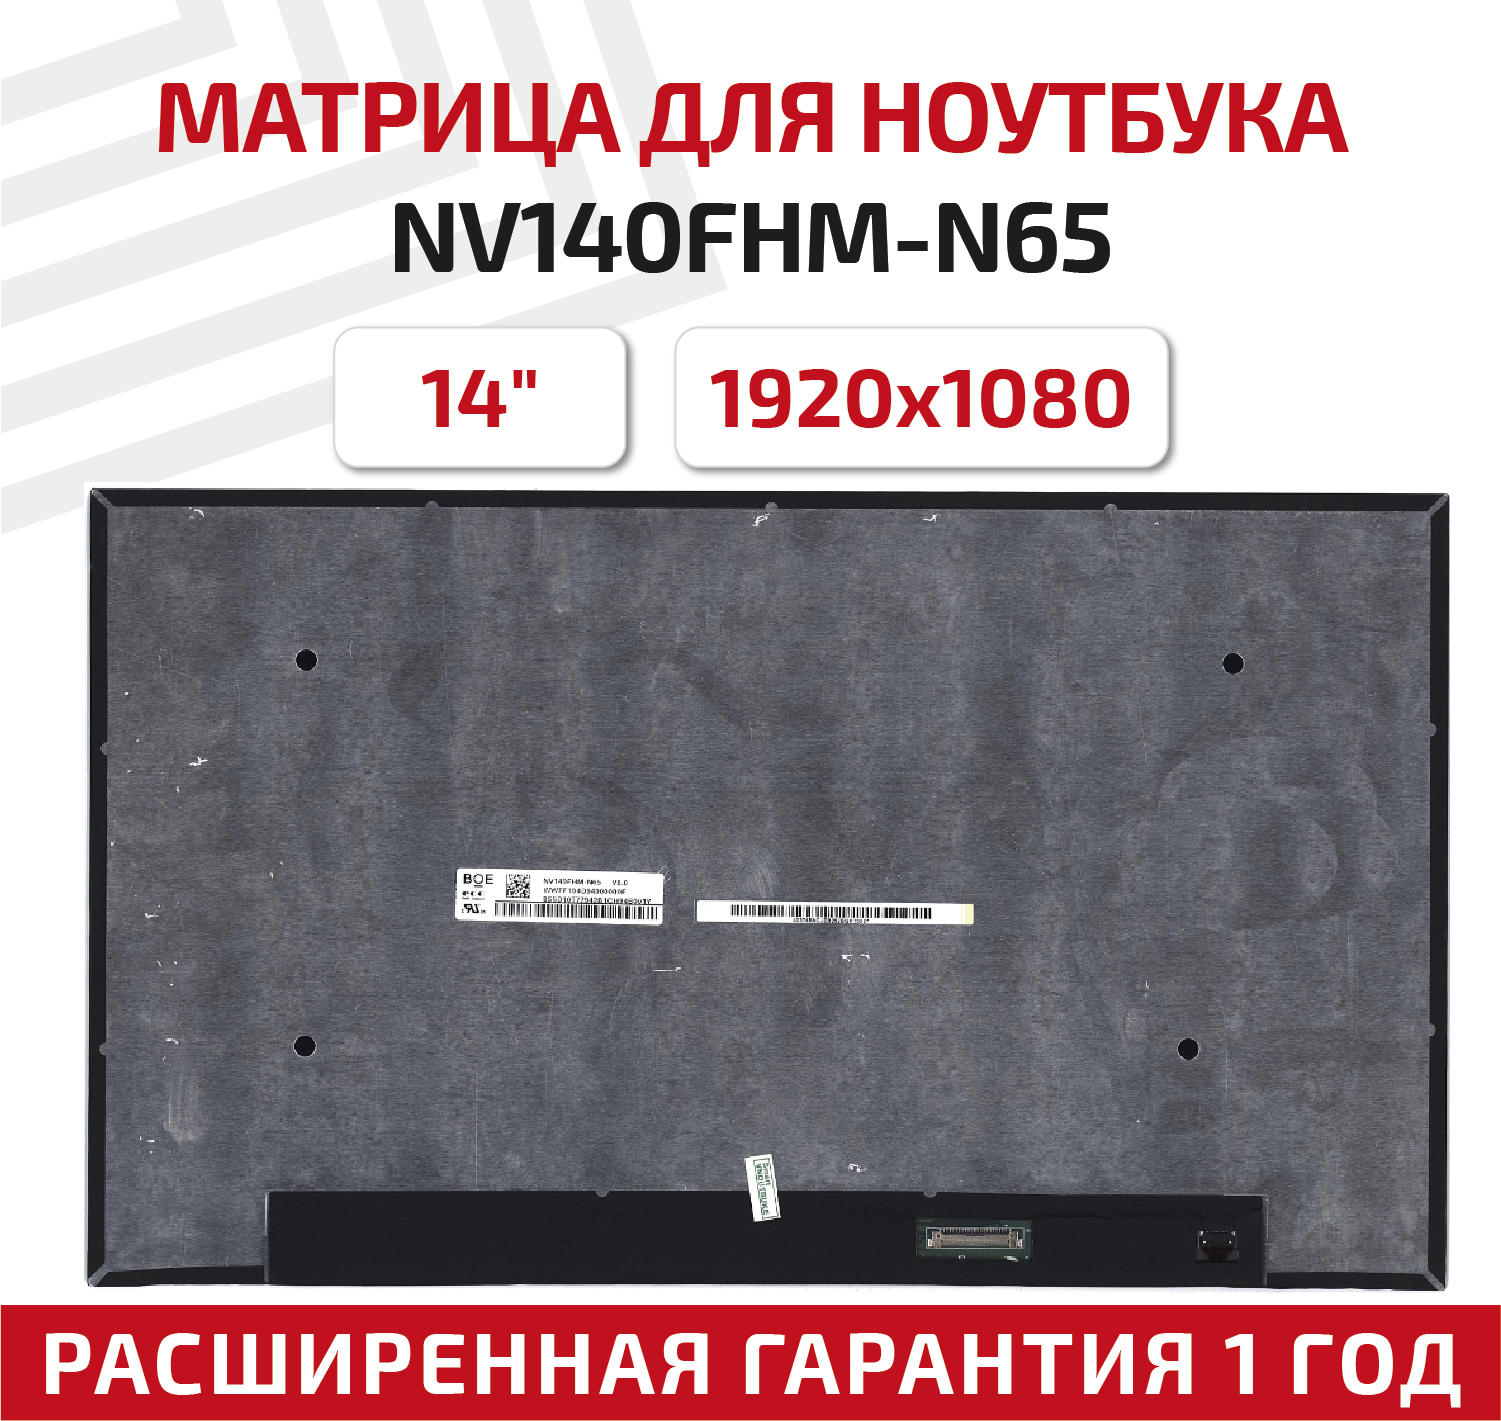 Матрица (экран) для ноутбука NV140FHM-N65, 14", 1920x1080, 30-pin, UltraSlim, светодиодная (LED), глянцевая